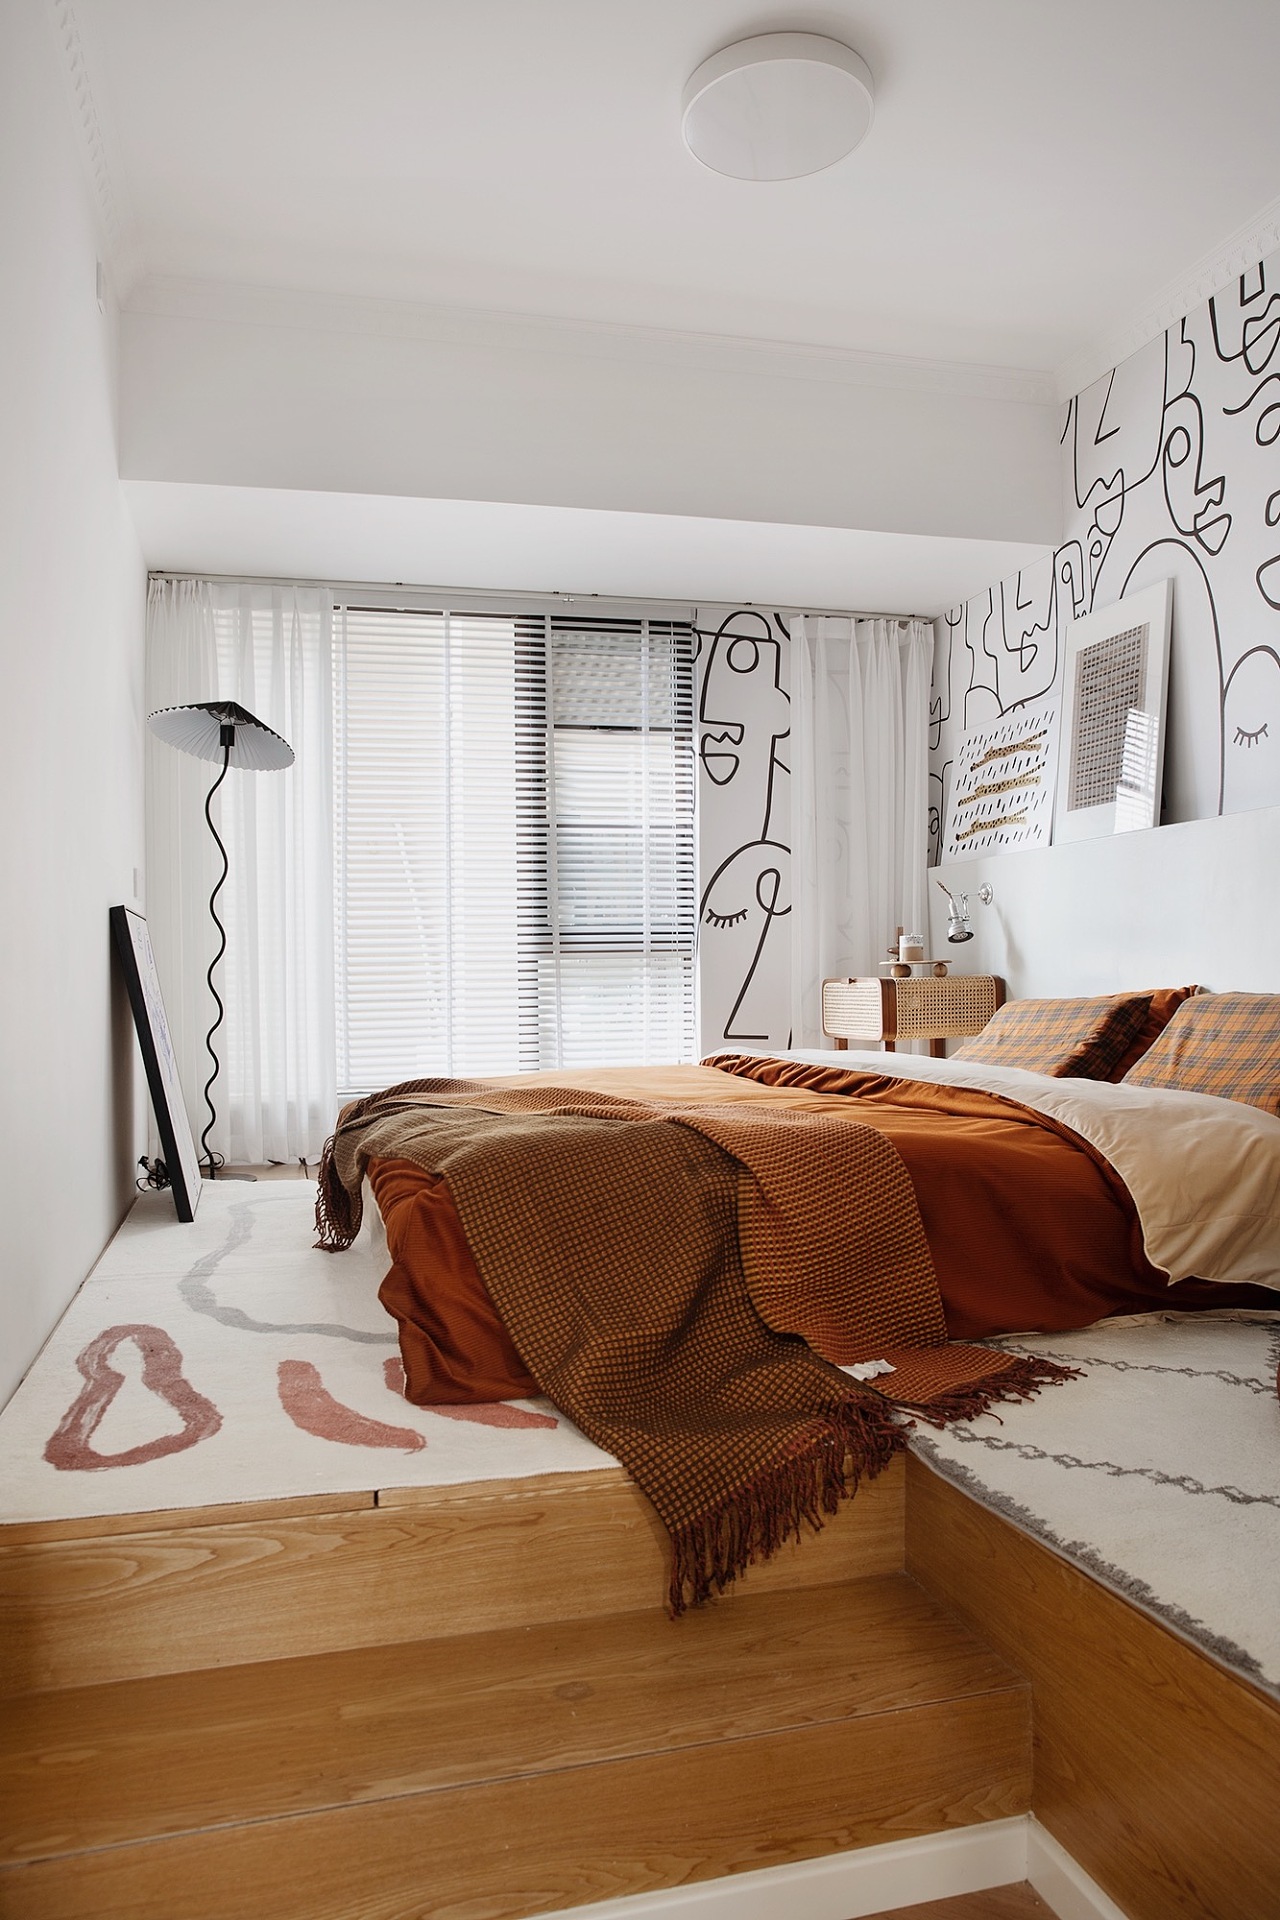 白色的背景和橘色床品搭配，既有现代风格的高级感，也有轻奢主义的精致感。